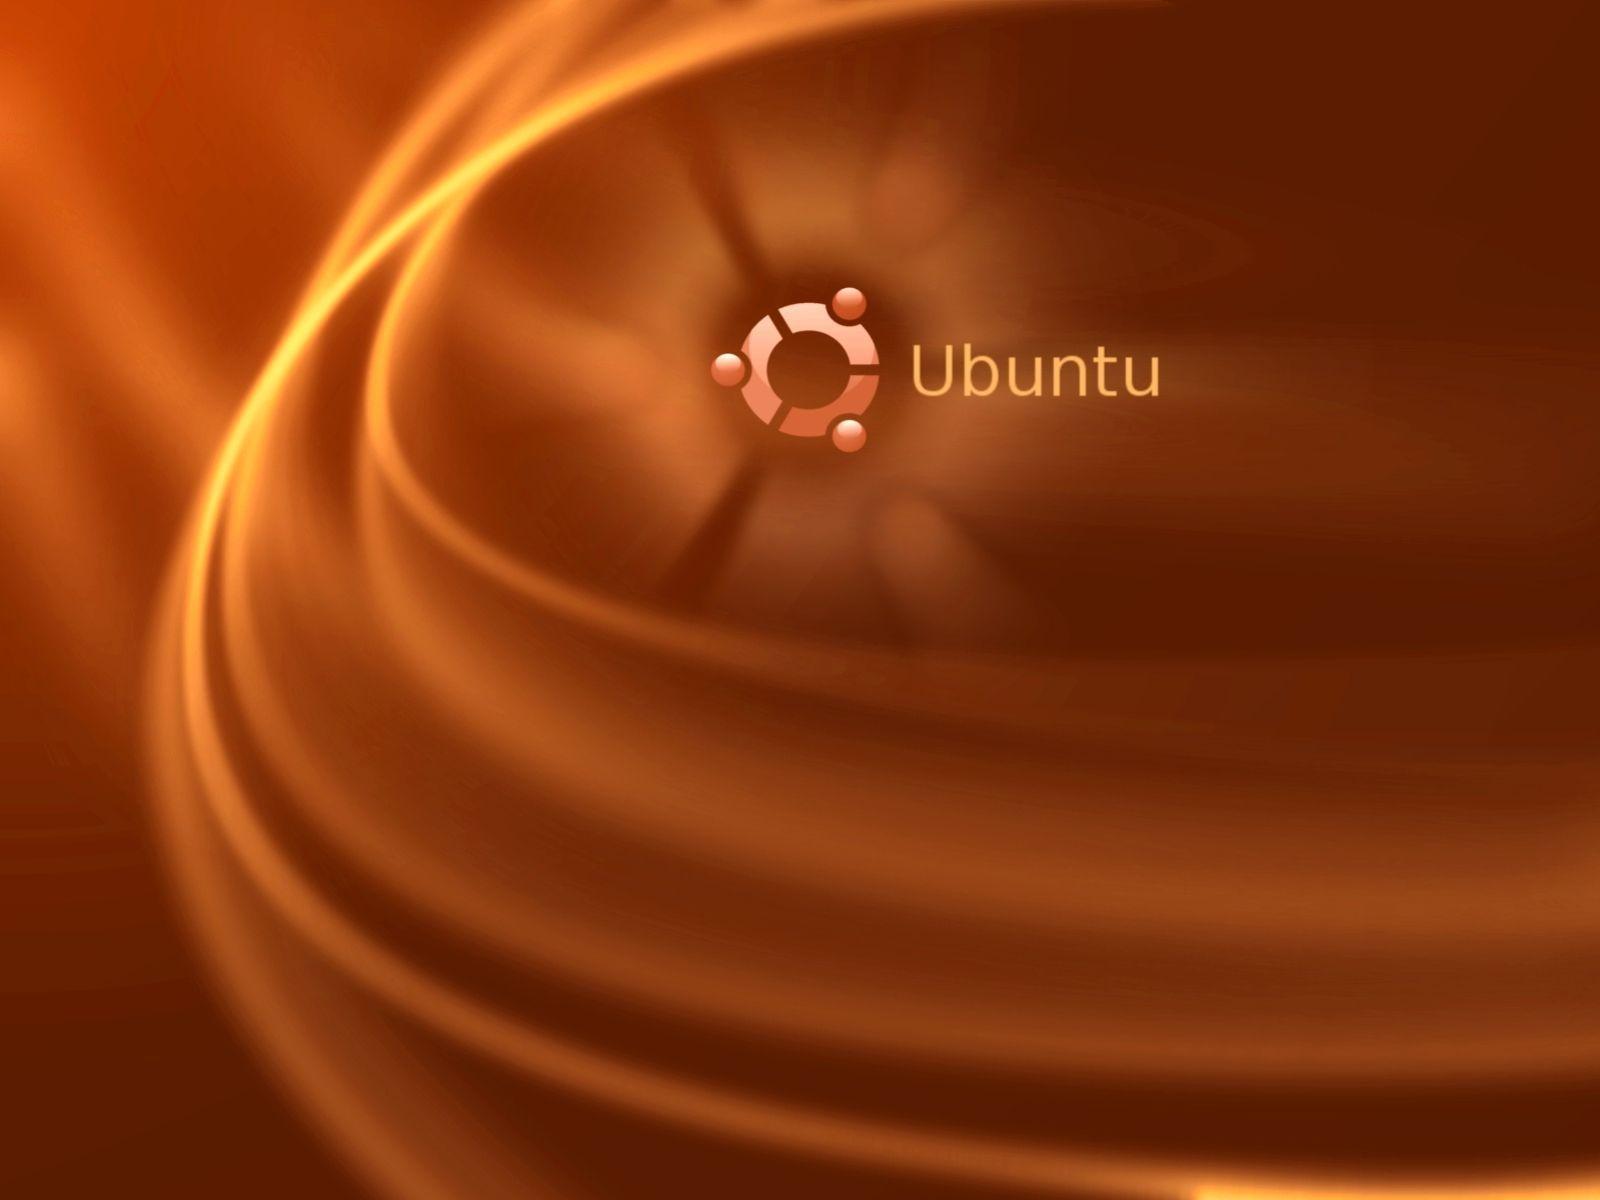 Ubuntu Wallpaper. Ubuntu Background. Ubuntu Wallpaper Widescreen